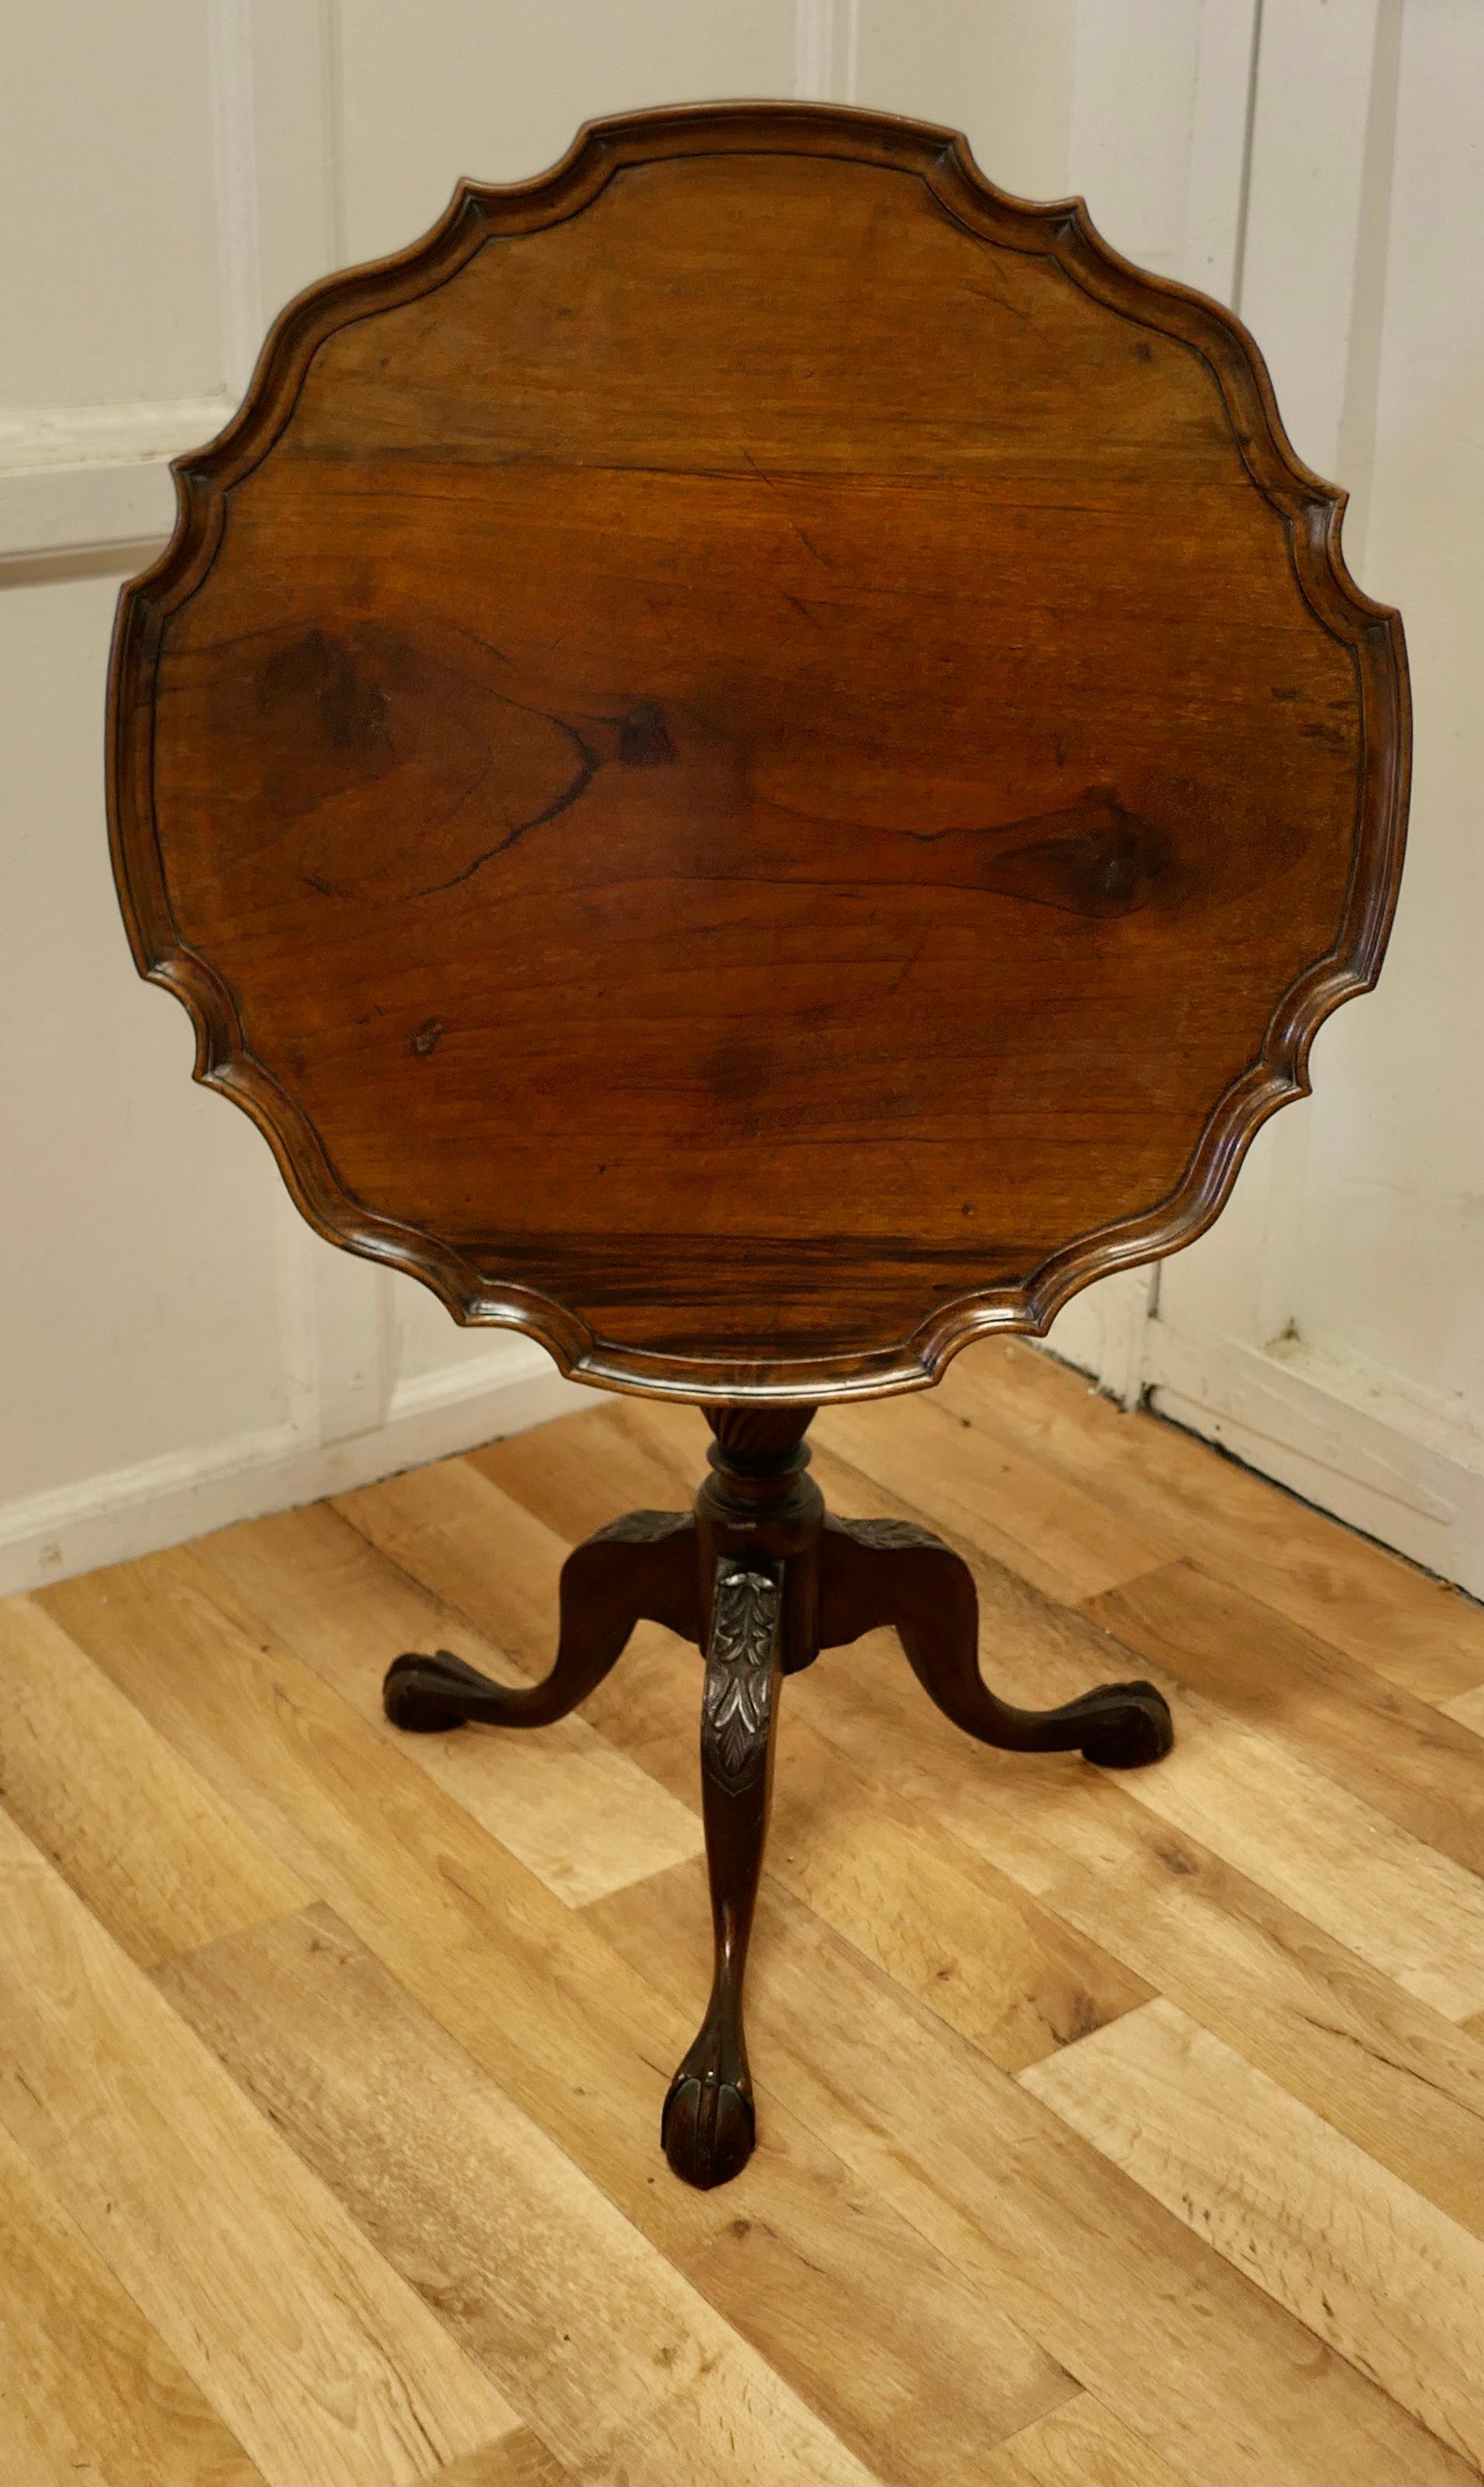 kippbarer Weintisch aus dem 19. Jahrhundert.

Dieser schöne Tisch steht auf einem dreibeinigen Sockel, der an den Knien mit Akanthusblättern verziert ist, und hat ein schönes gedrehtes Mittelbein.
Die Platte lässt sich kippen, wenn der Platz